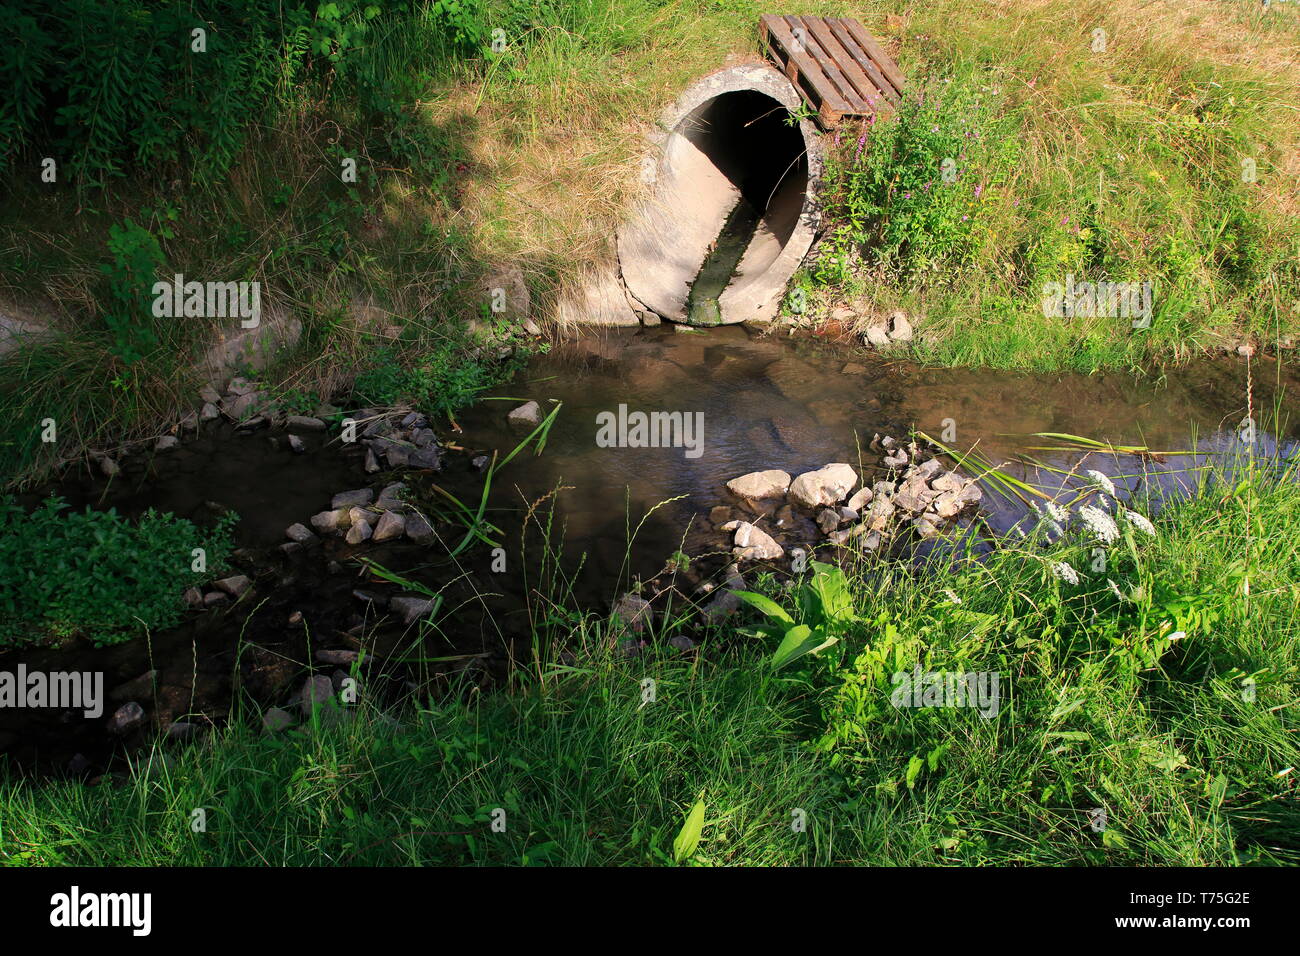 Abwasserkanal, Abflussrohr aus Beton führt Schmutzwasser in einen kleine Bach Stock Photo